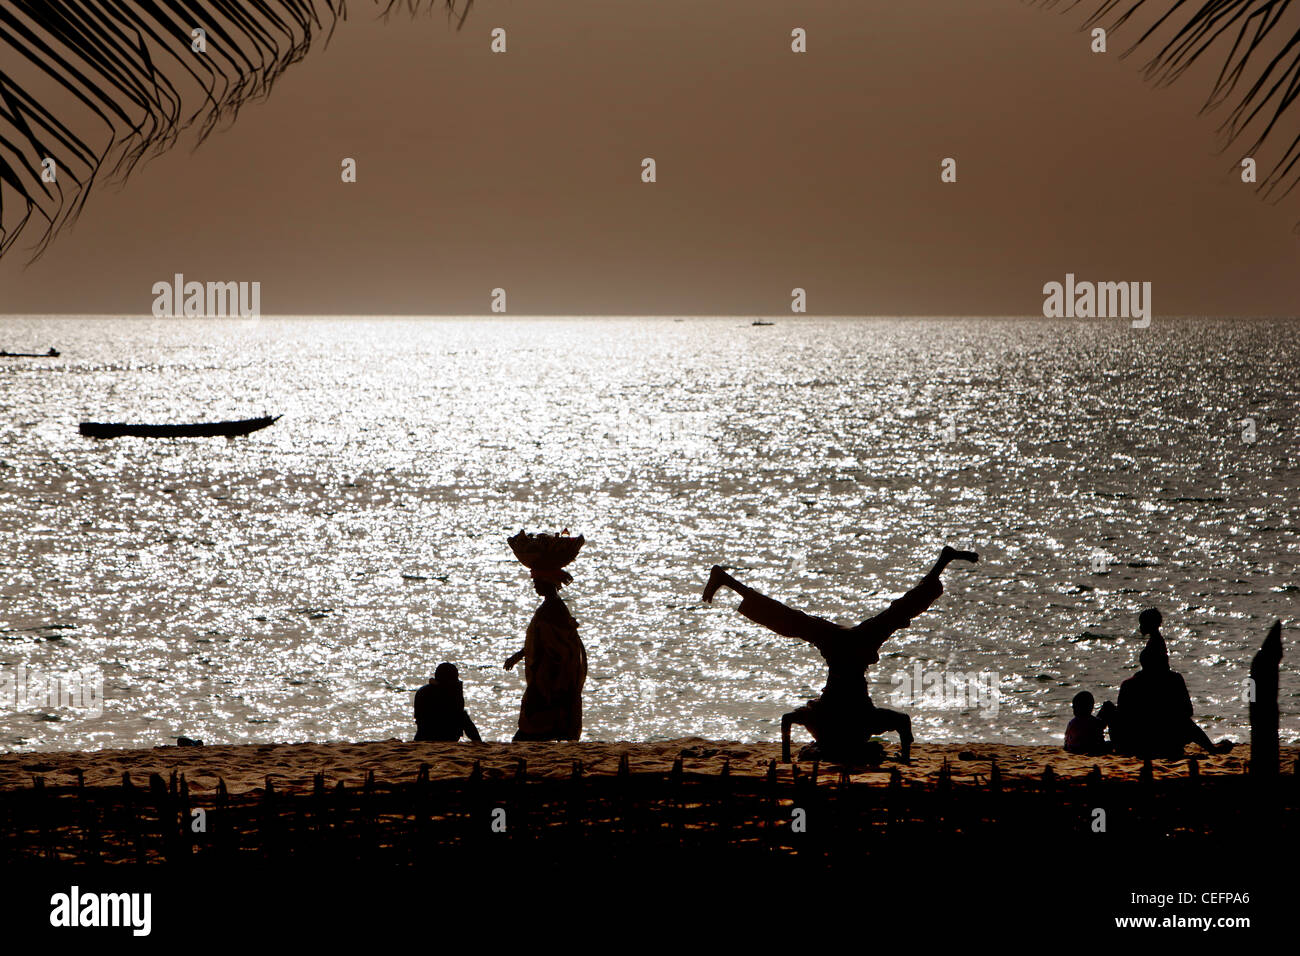 Der Cogotiers-Strand vor der Tama Lodge, ein Luxushotel in Mbour, Senegal. Stockfoto